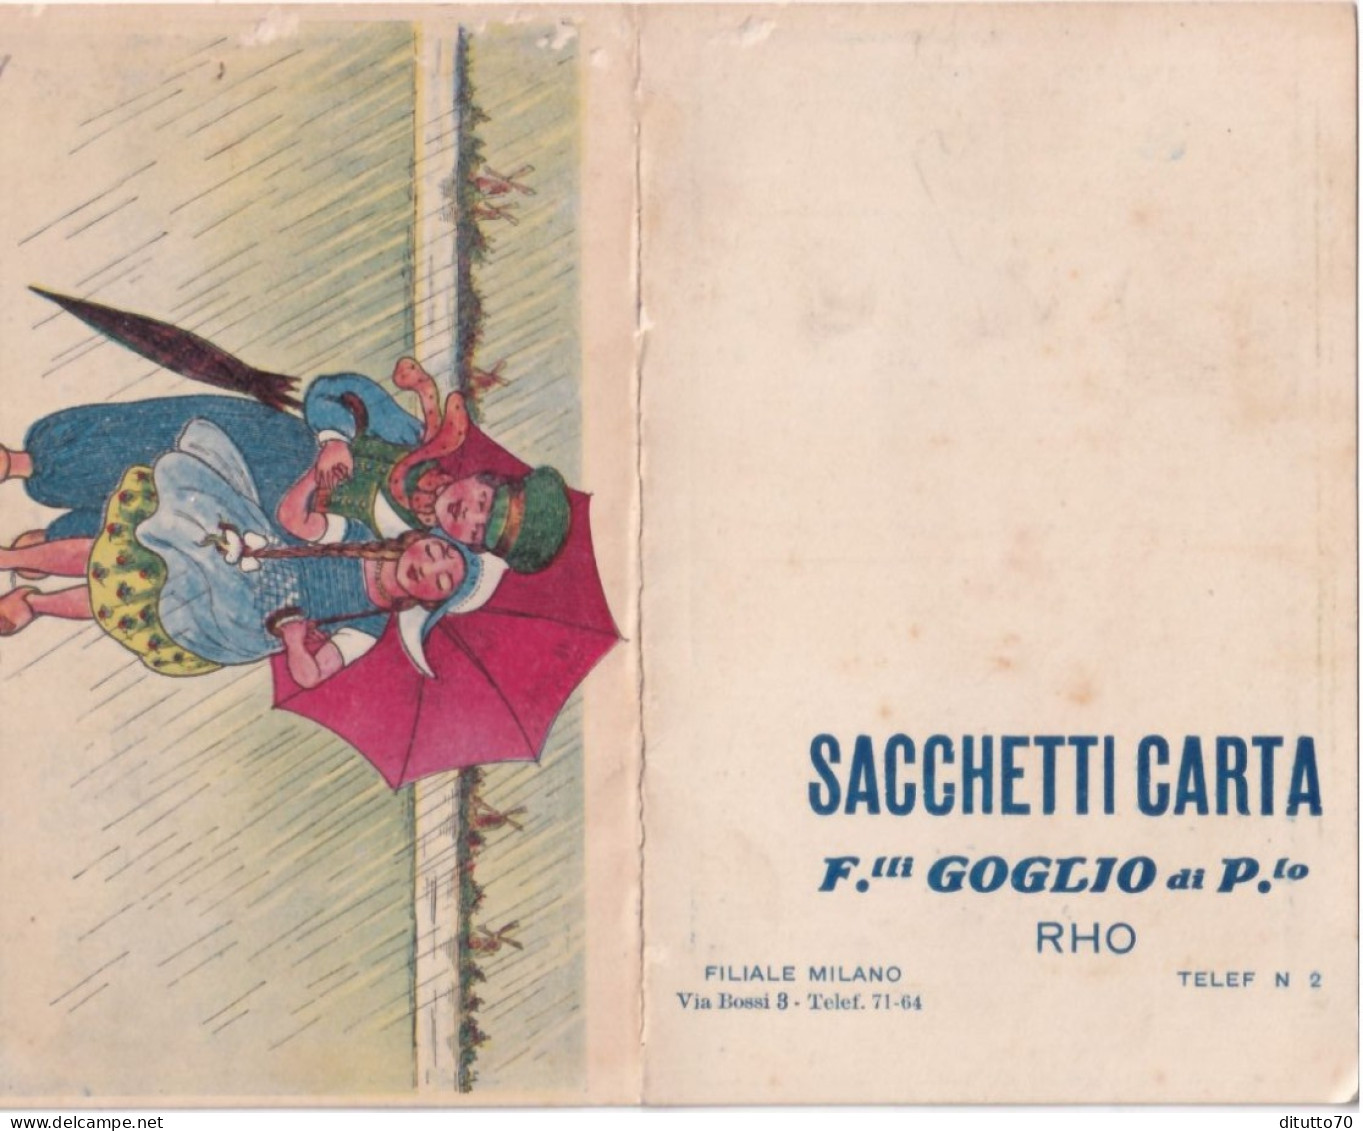 Calendarietto - Sacchetti Carta - F.lli Goglio Di P.lo - Rho - Anno 1915 - Small : 1901-20